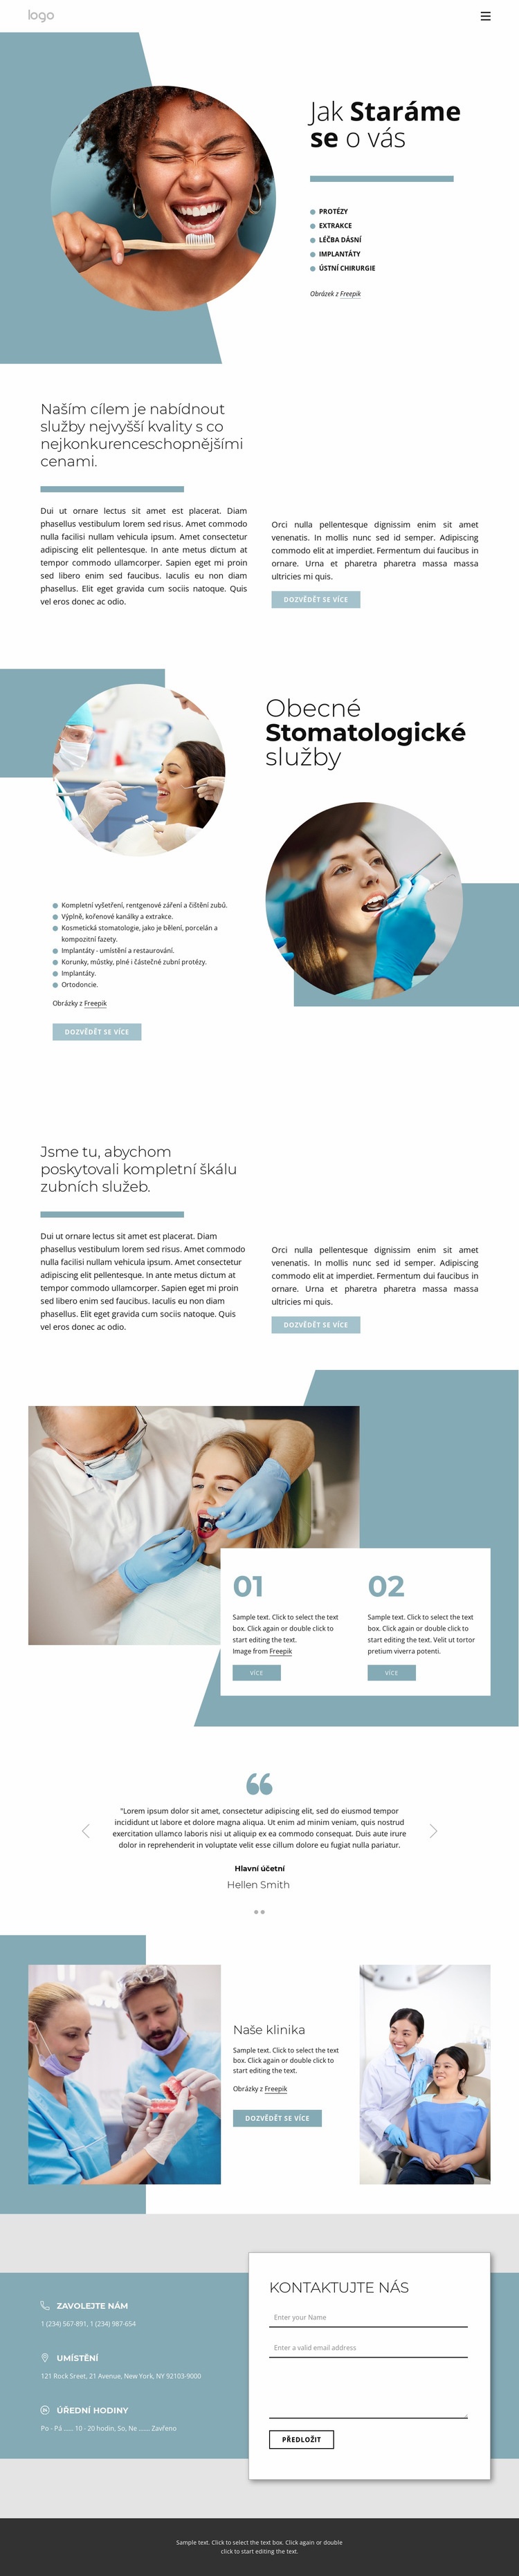 Kvalitní zubní služby Šablona webové stránky